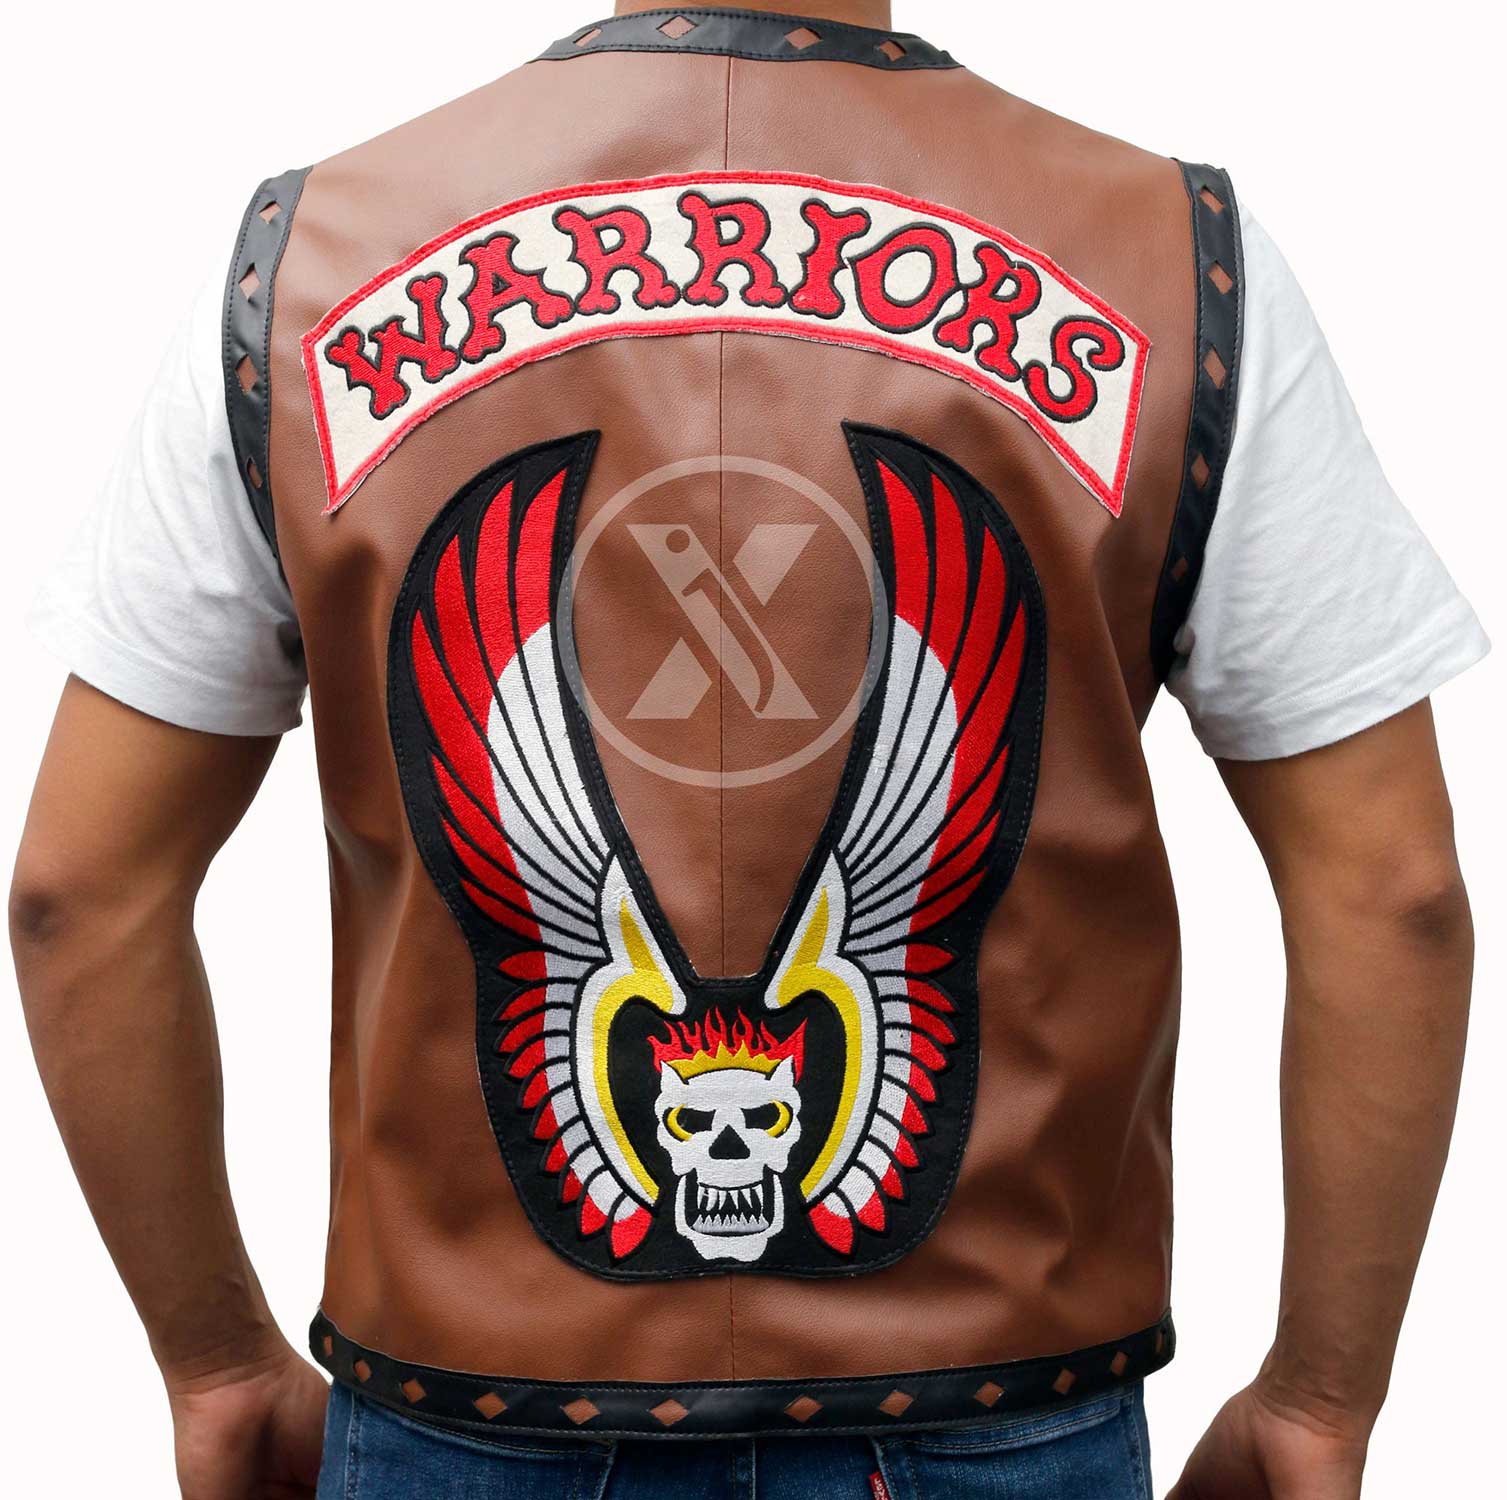 Escrutinio dos Cruel the warriors vest